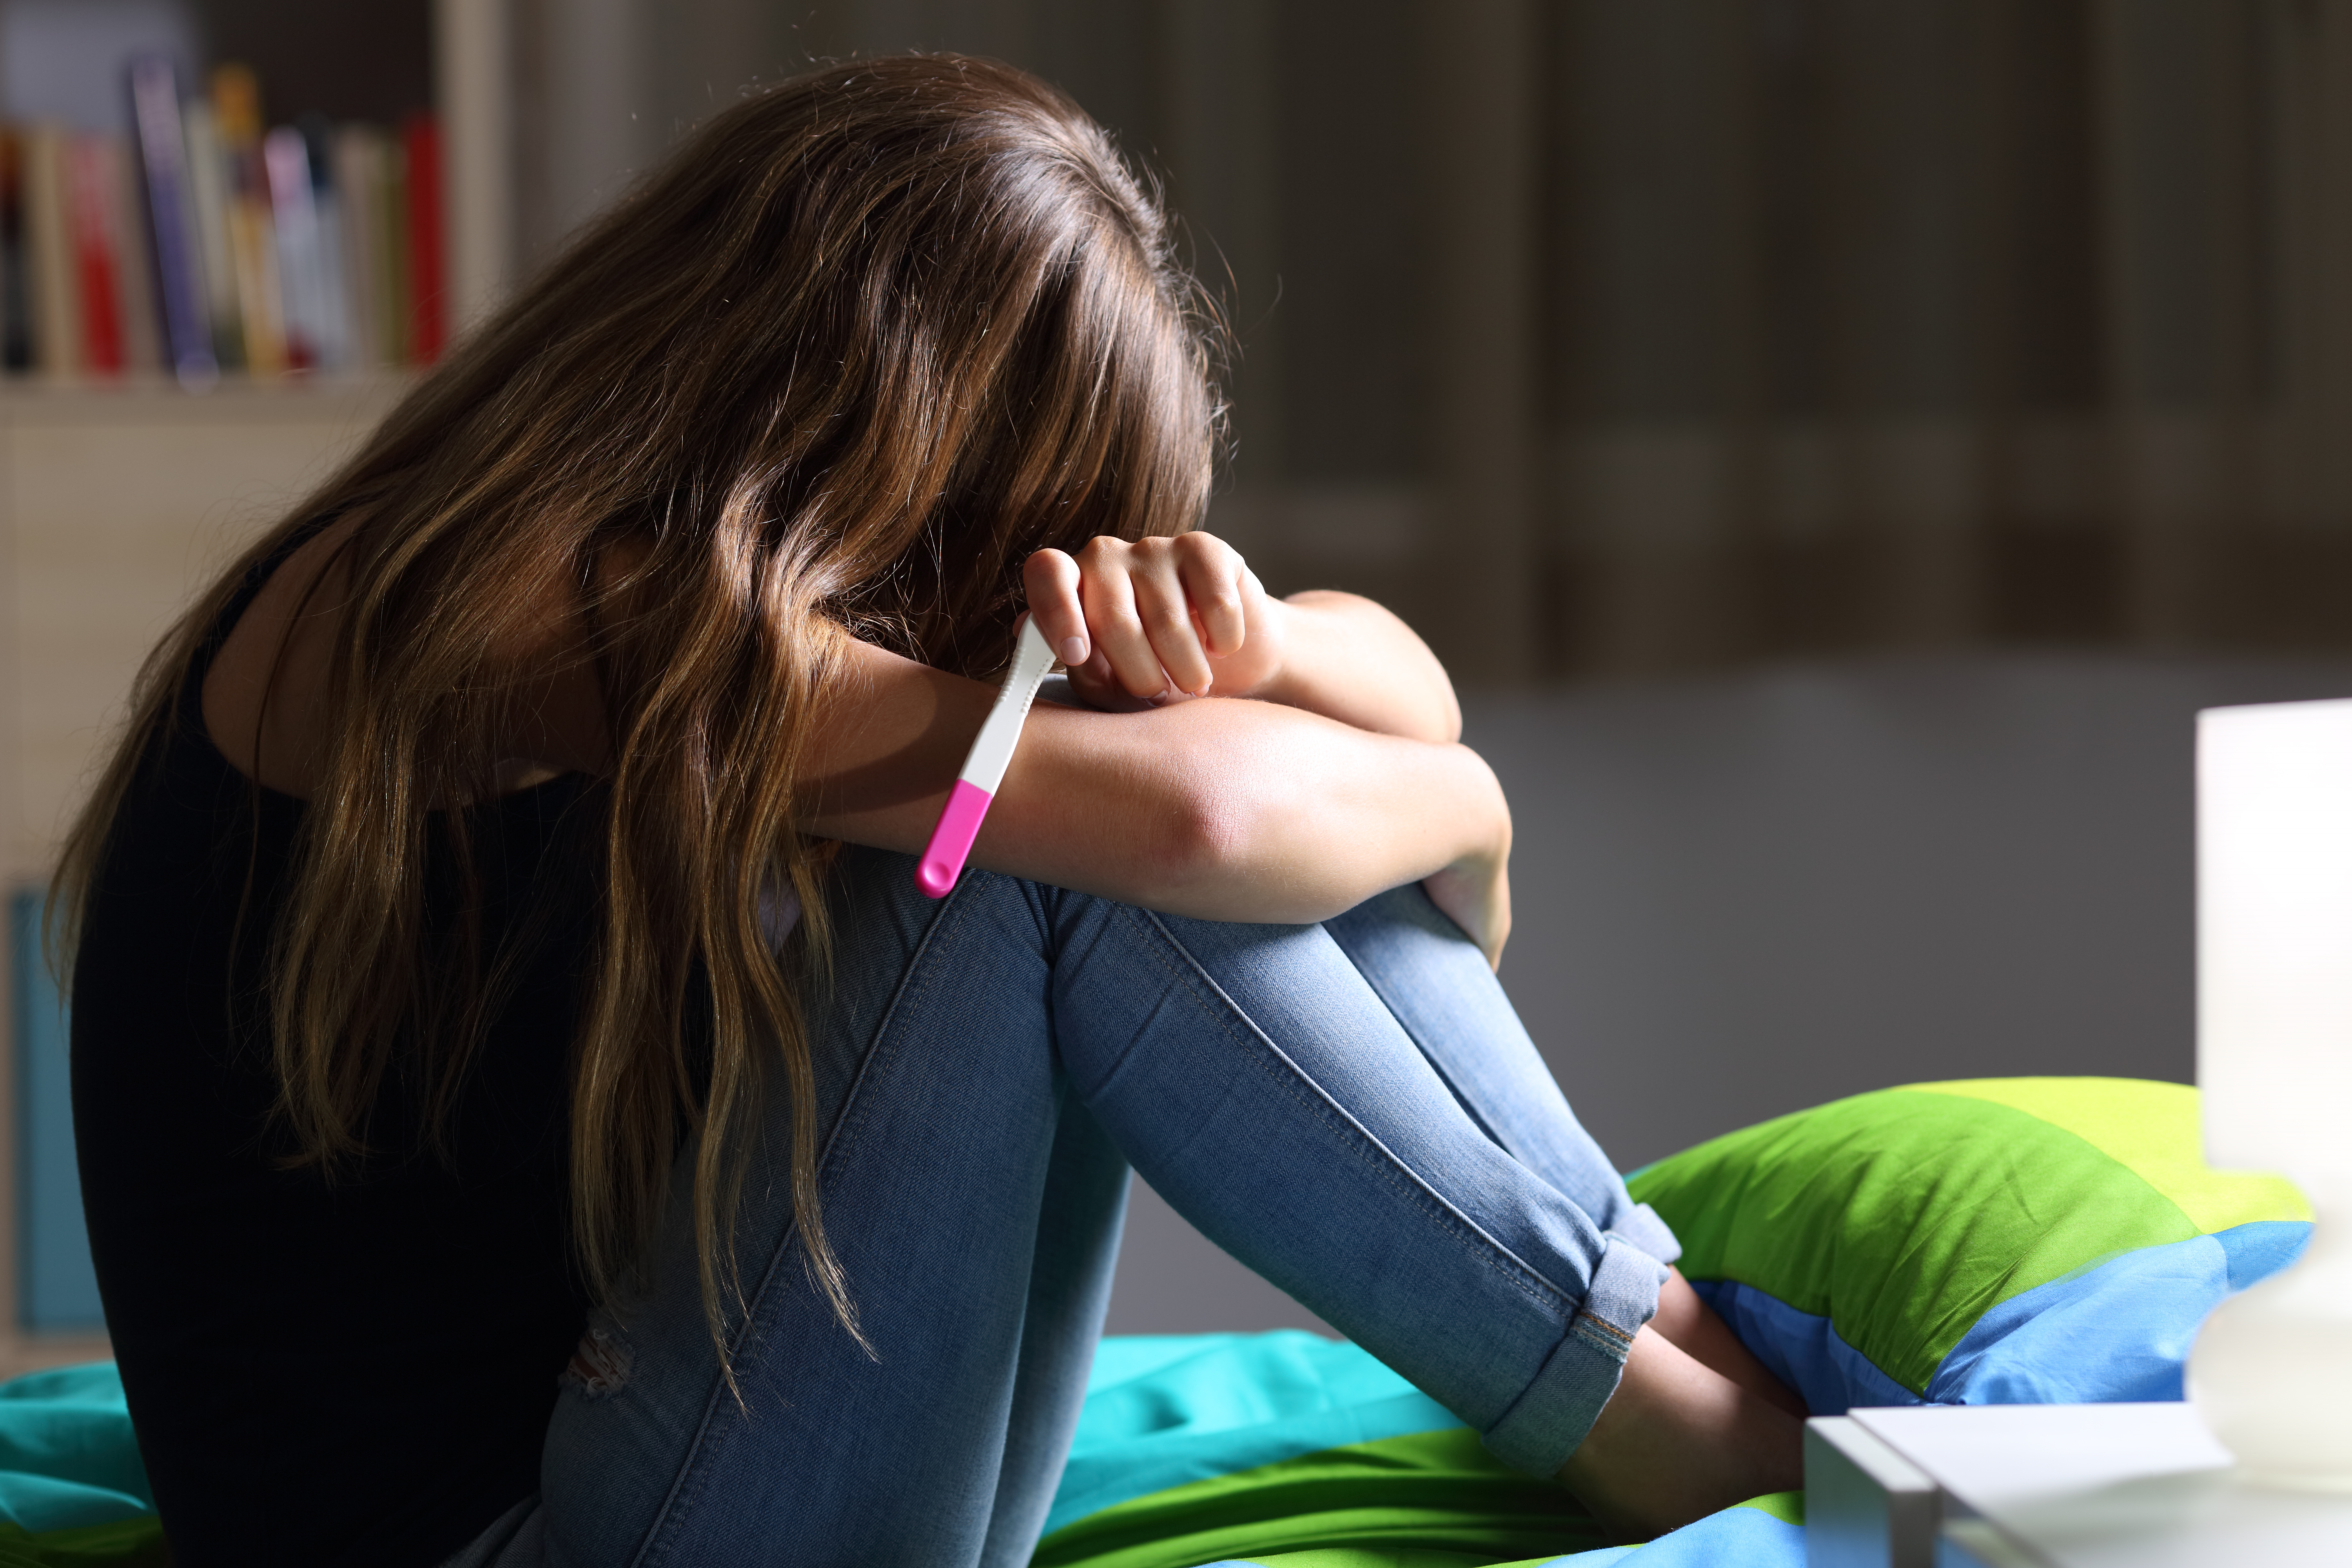 Une adolescente qui pleure à cause d'un test de grossesse positif | Source : Shutterstock